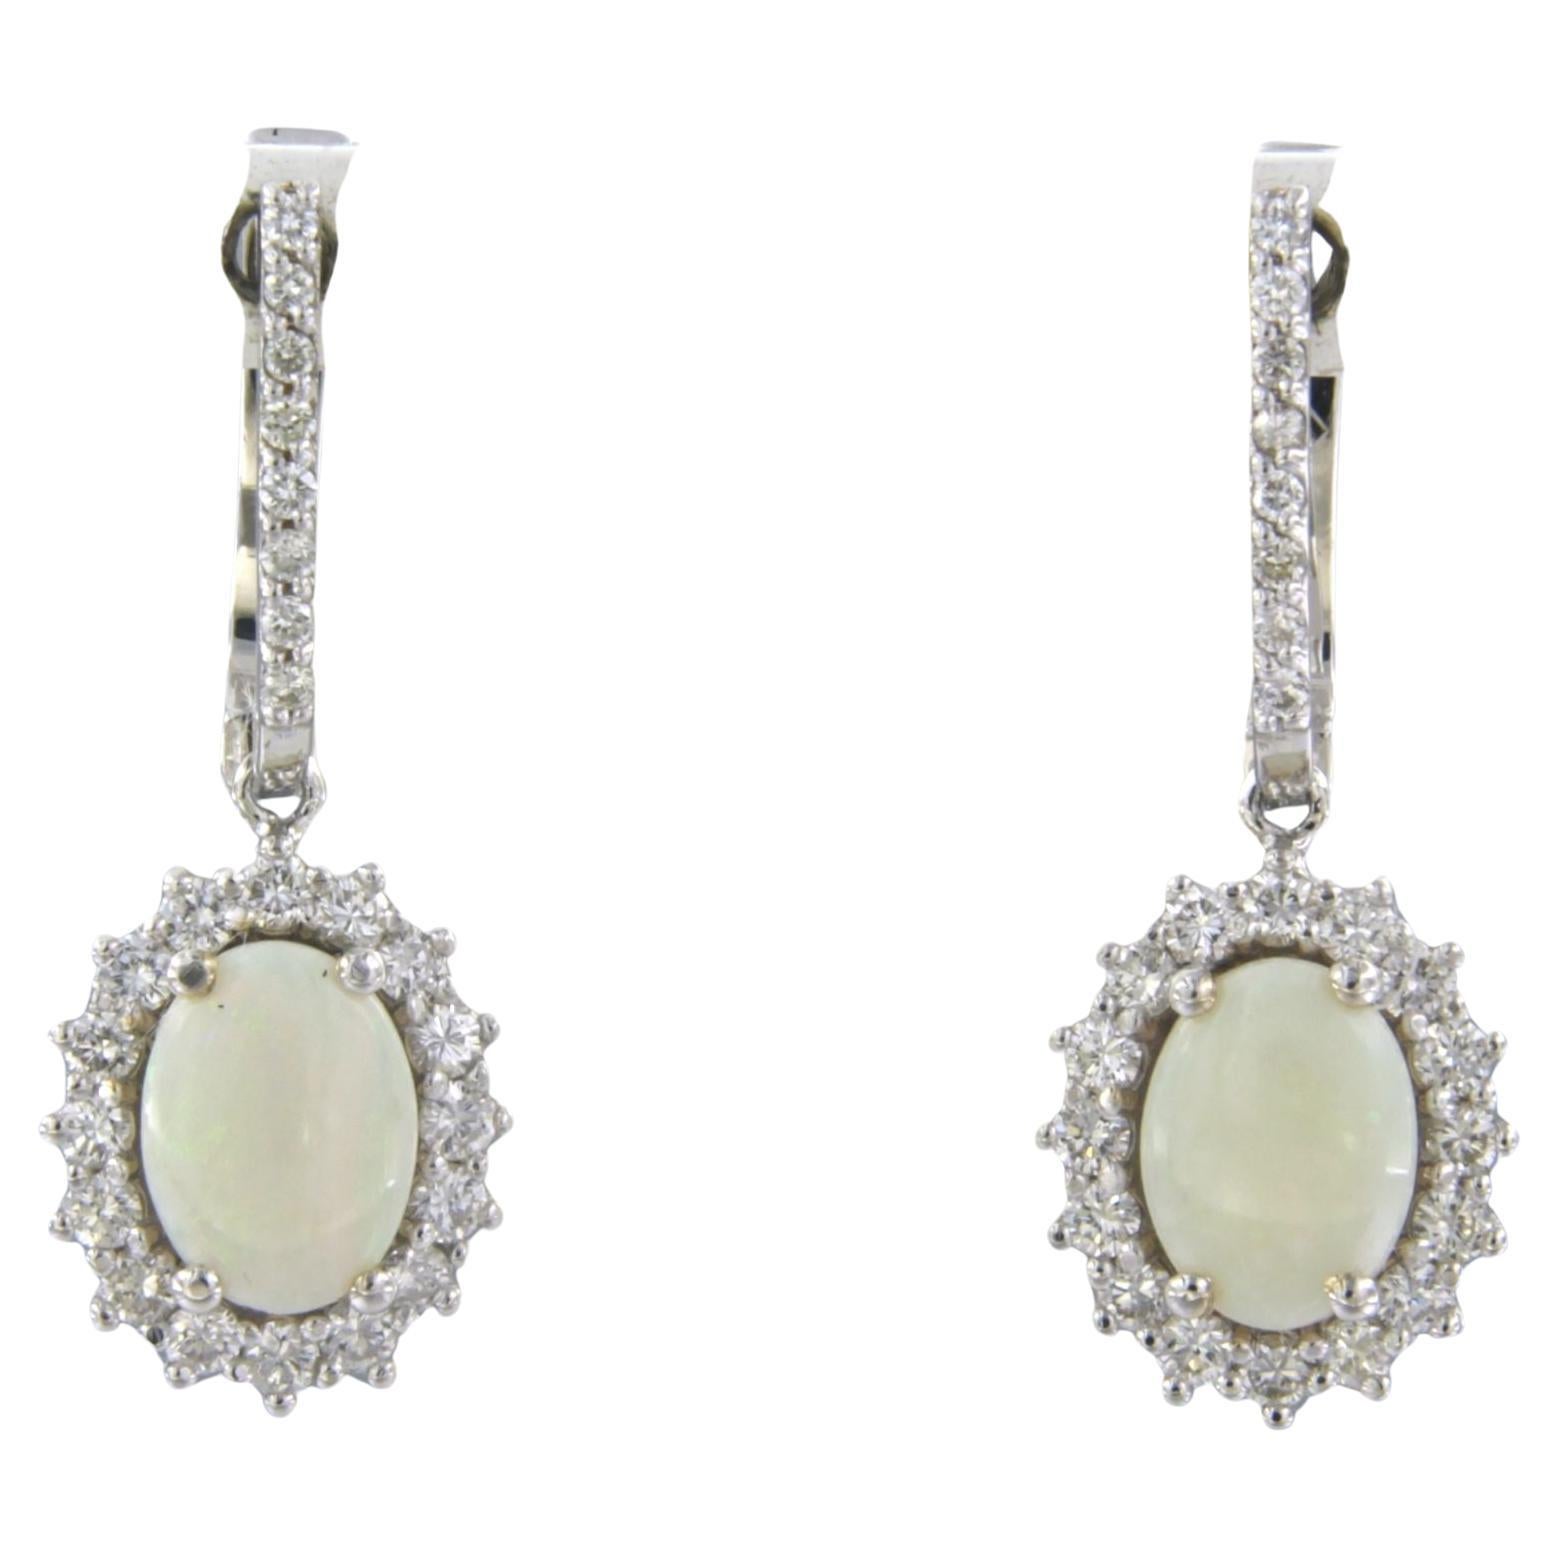 Ohrringe aus 18 Karat Weißgold mit Opal und Diamanten besetzt